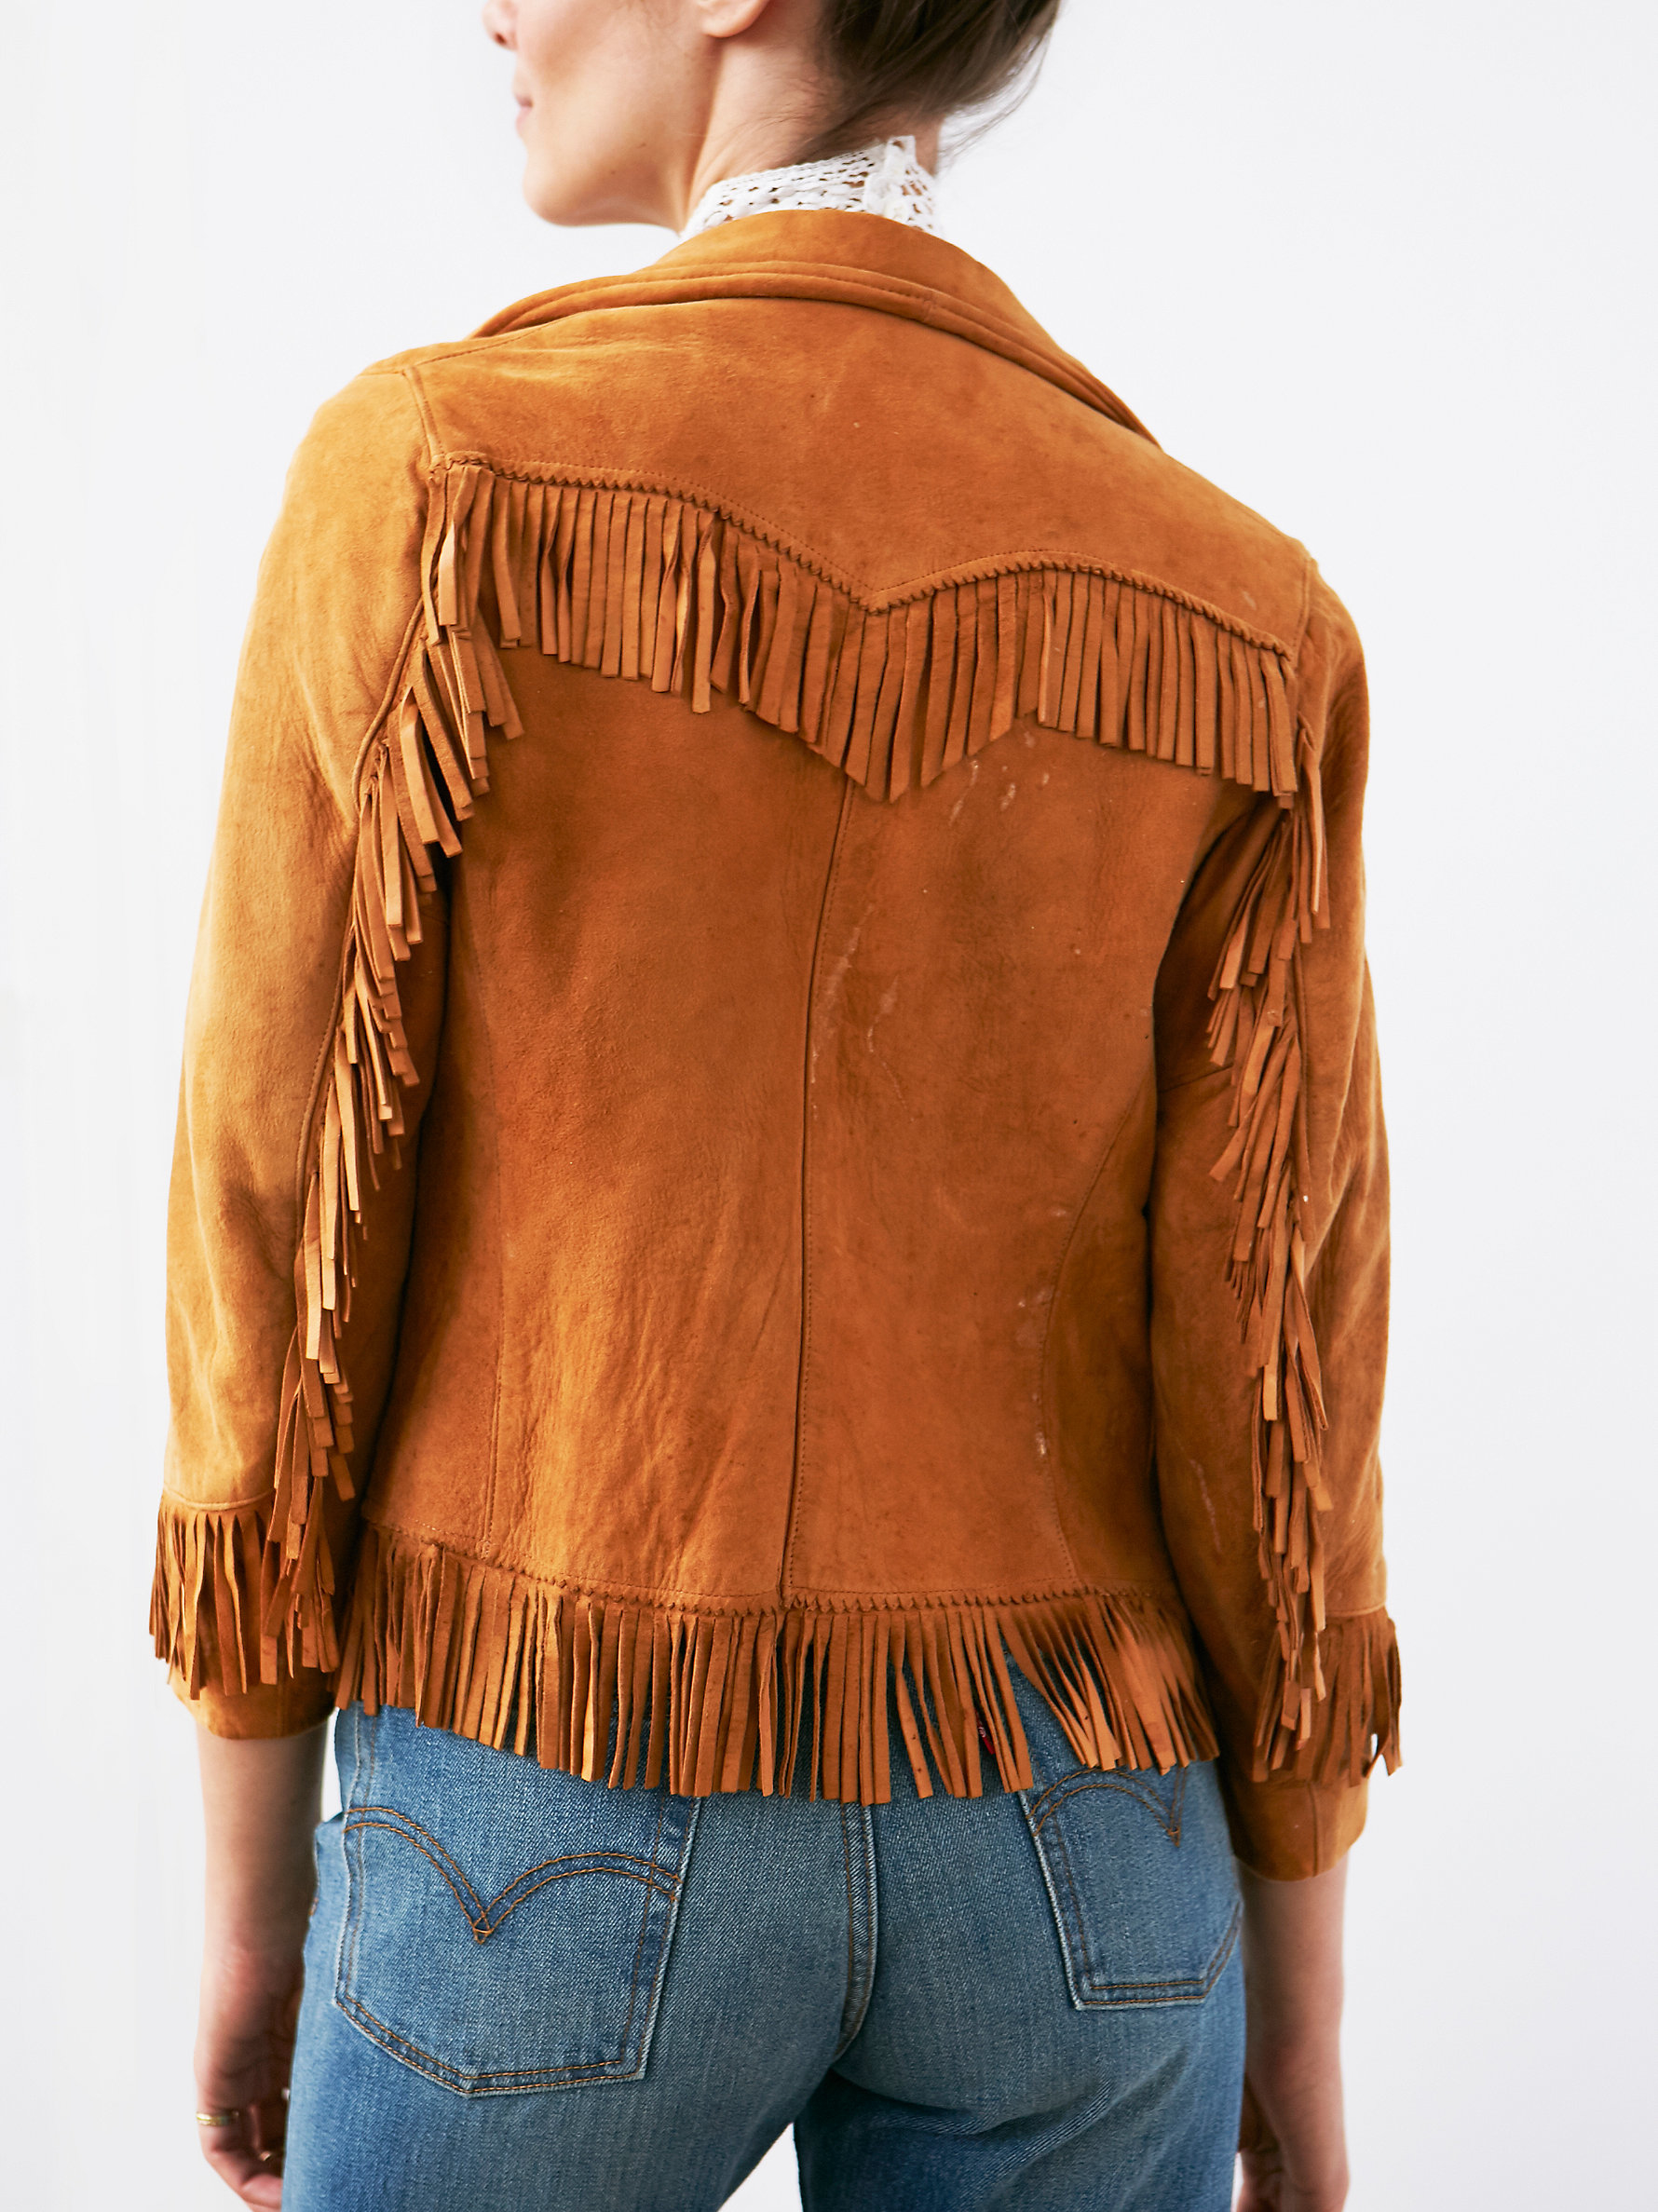 Free People Vintage Suede Fringe Jacket in Tan (Brown) - Lyst